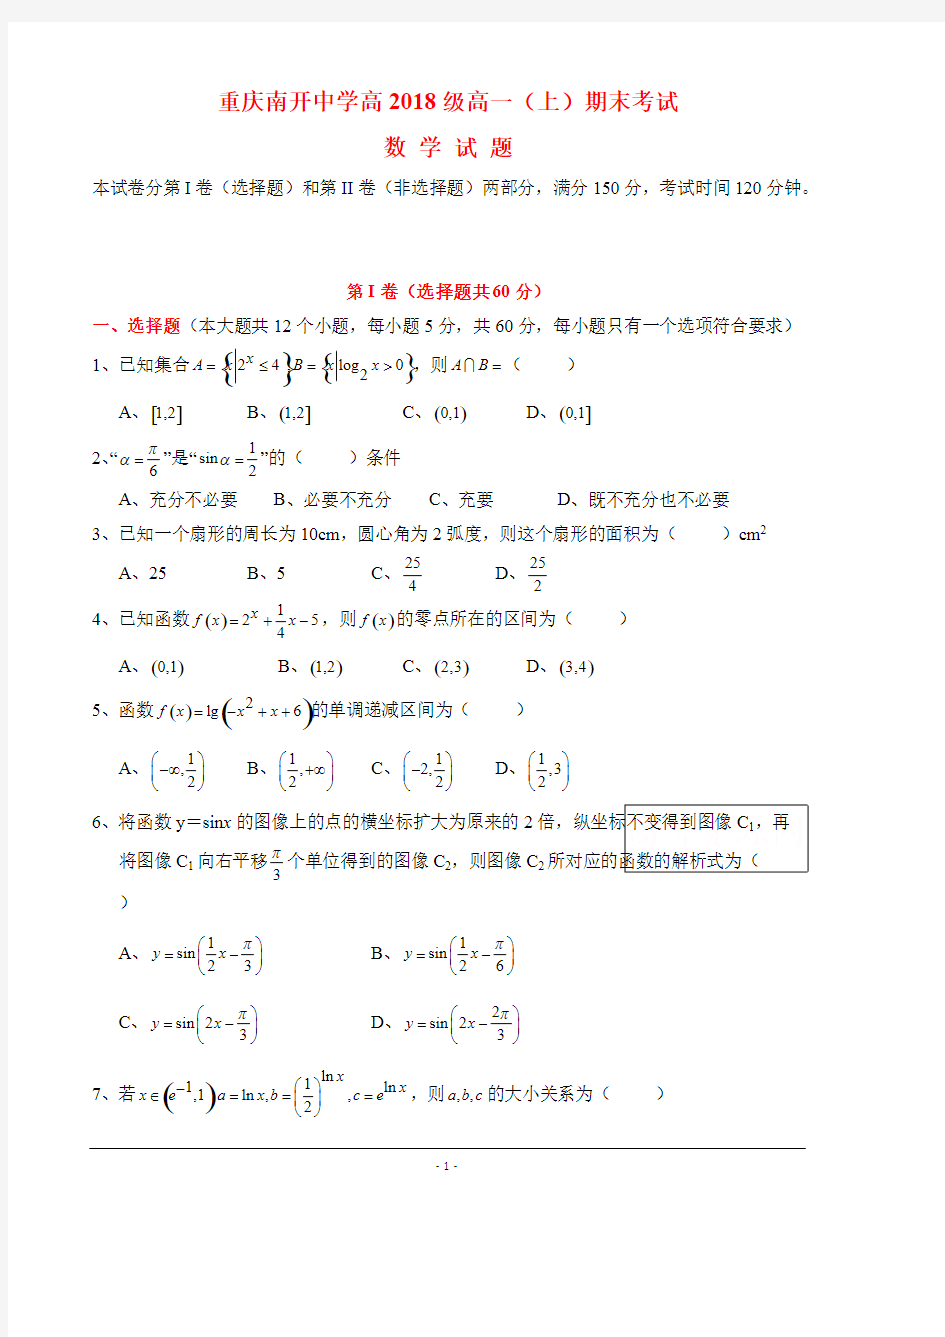 (完整版)重庆南开中学高2018级高一(上)期末数学考试及答案,推荐文档